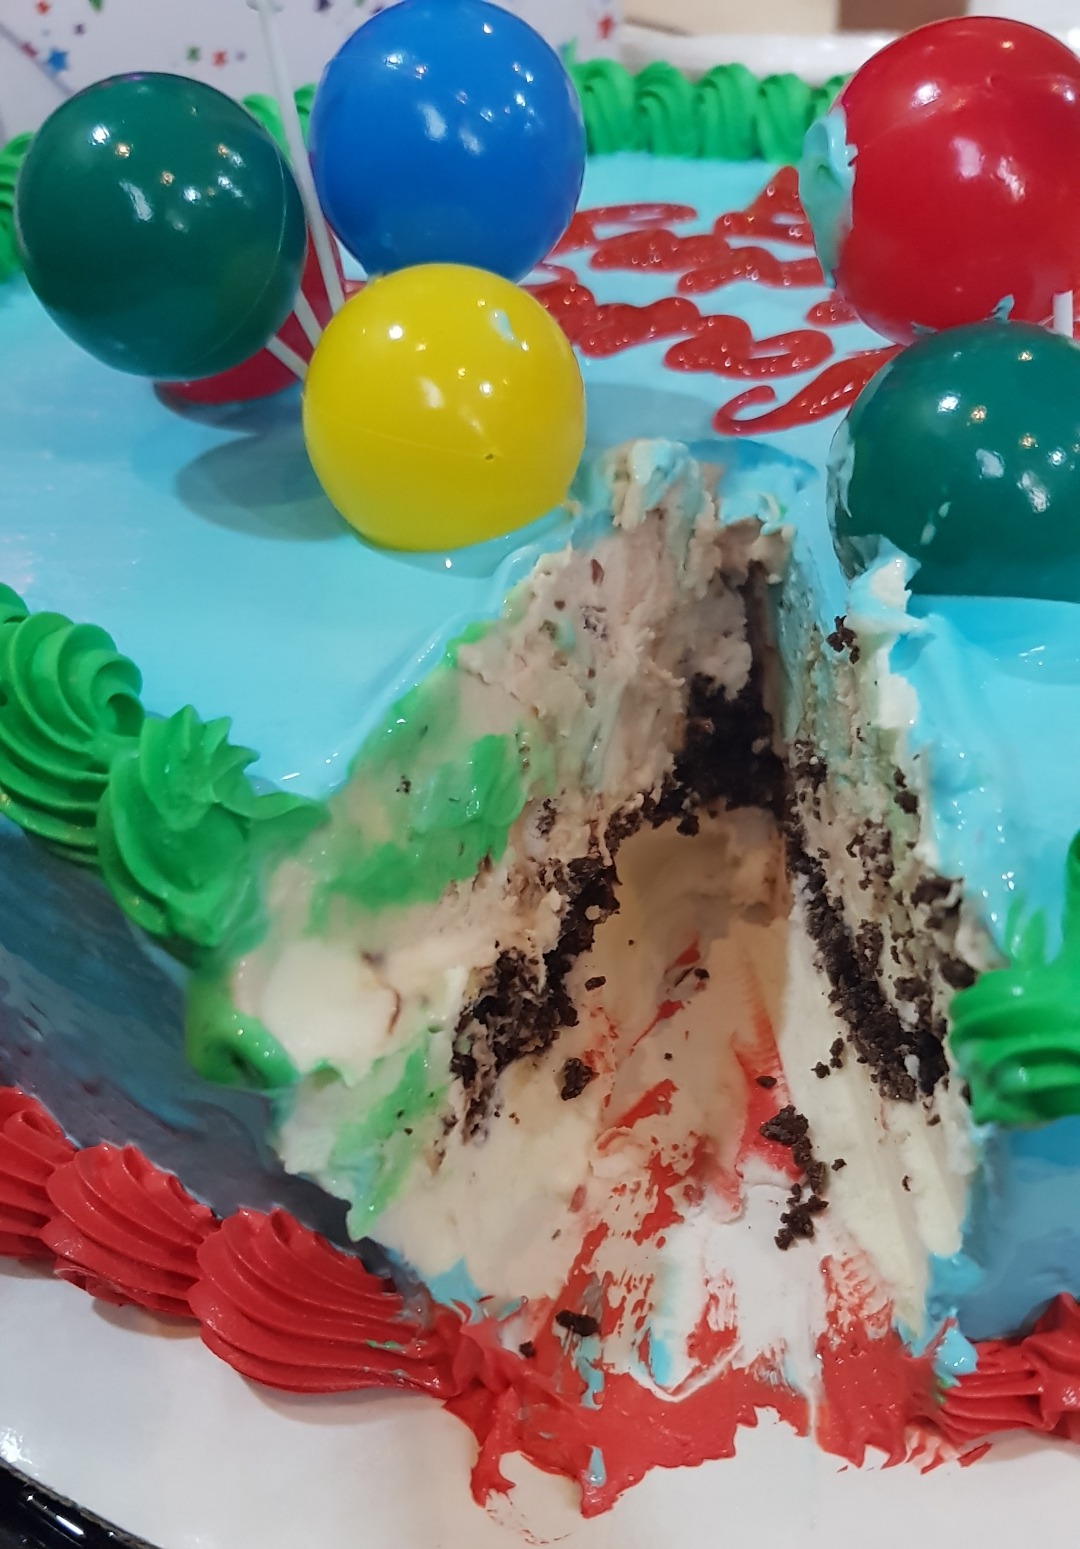 Oreo and snickers #icecream cake 😋 @ ديري كوين - البحرين